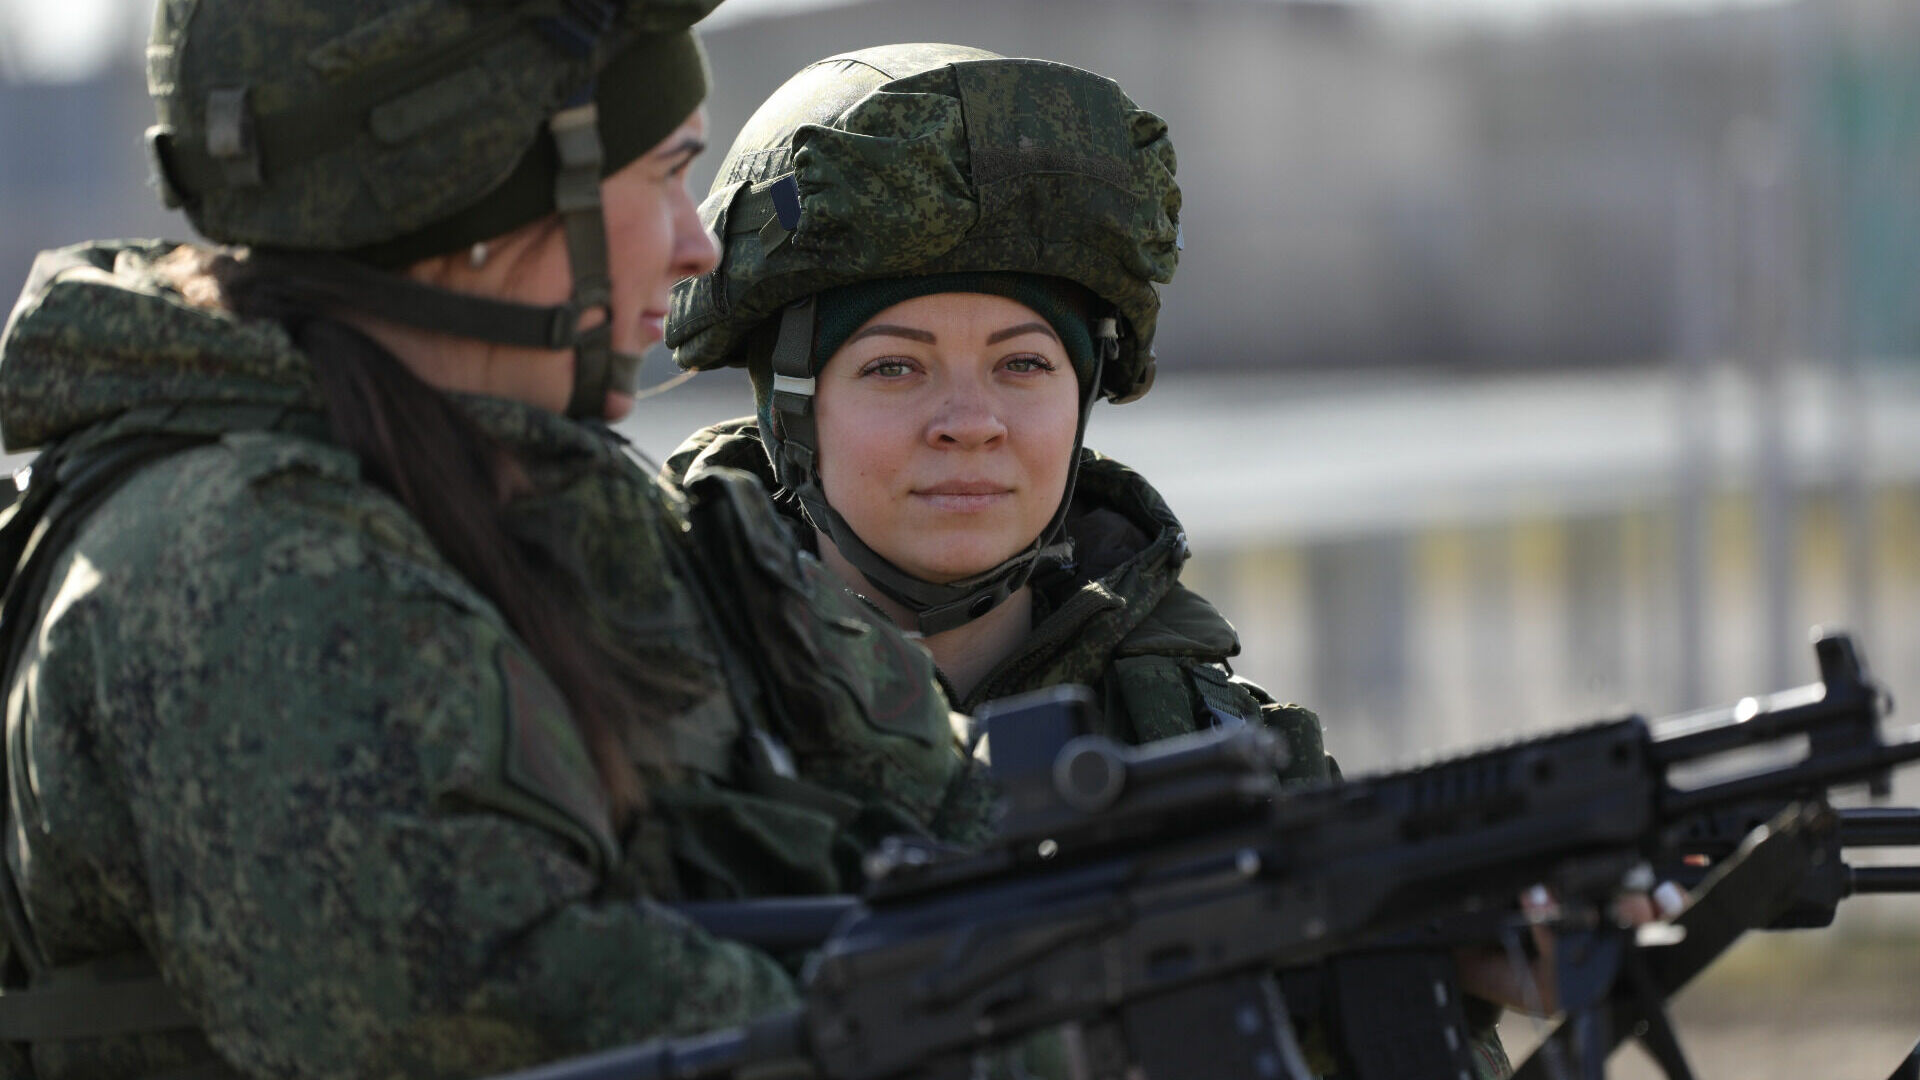 Цветами и концертом поздравили женщин-военнослужащих в Волгограде